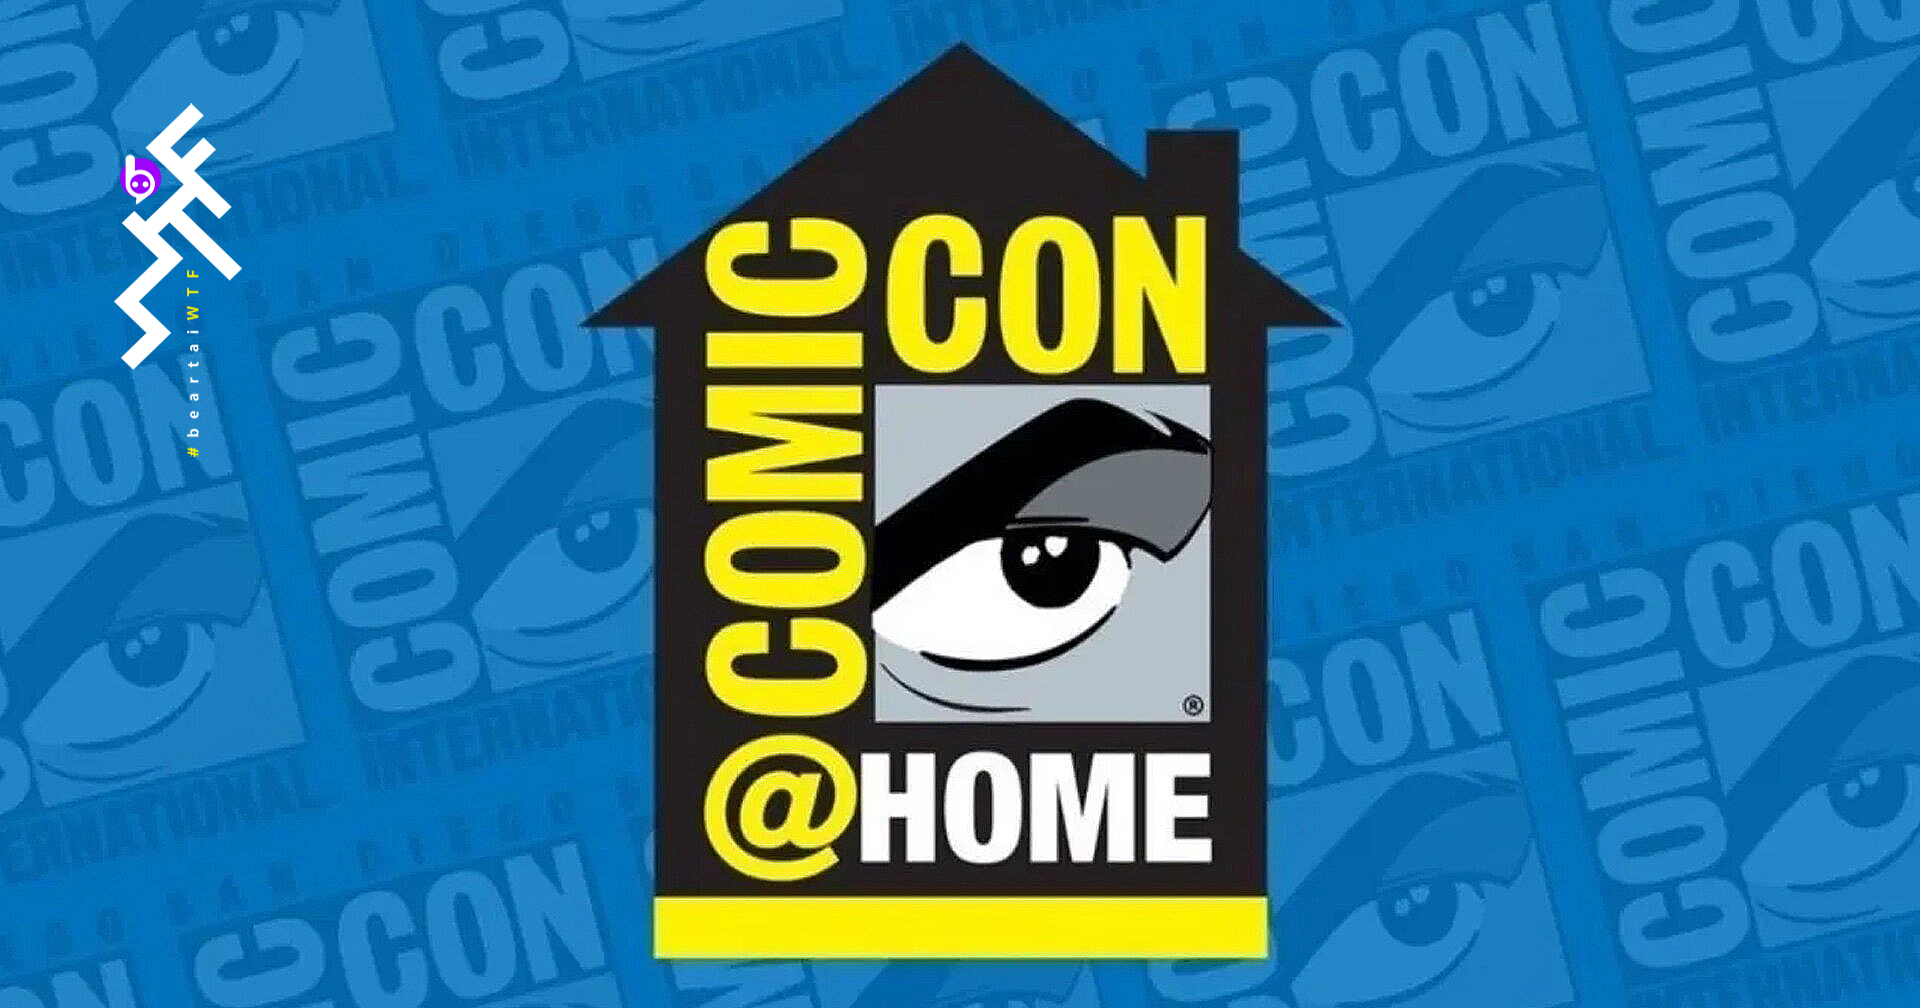 สรุปข่าวเด่นงาน Comic-Con@Home ประจำปี 2020